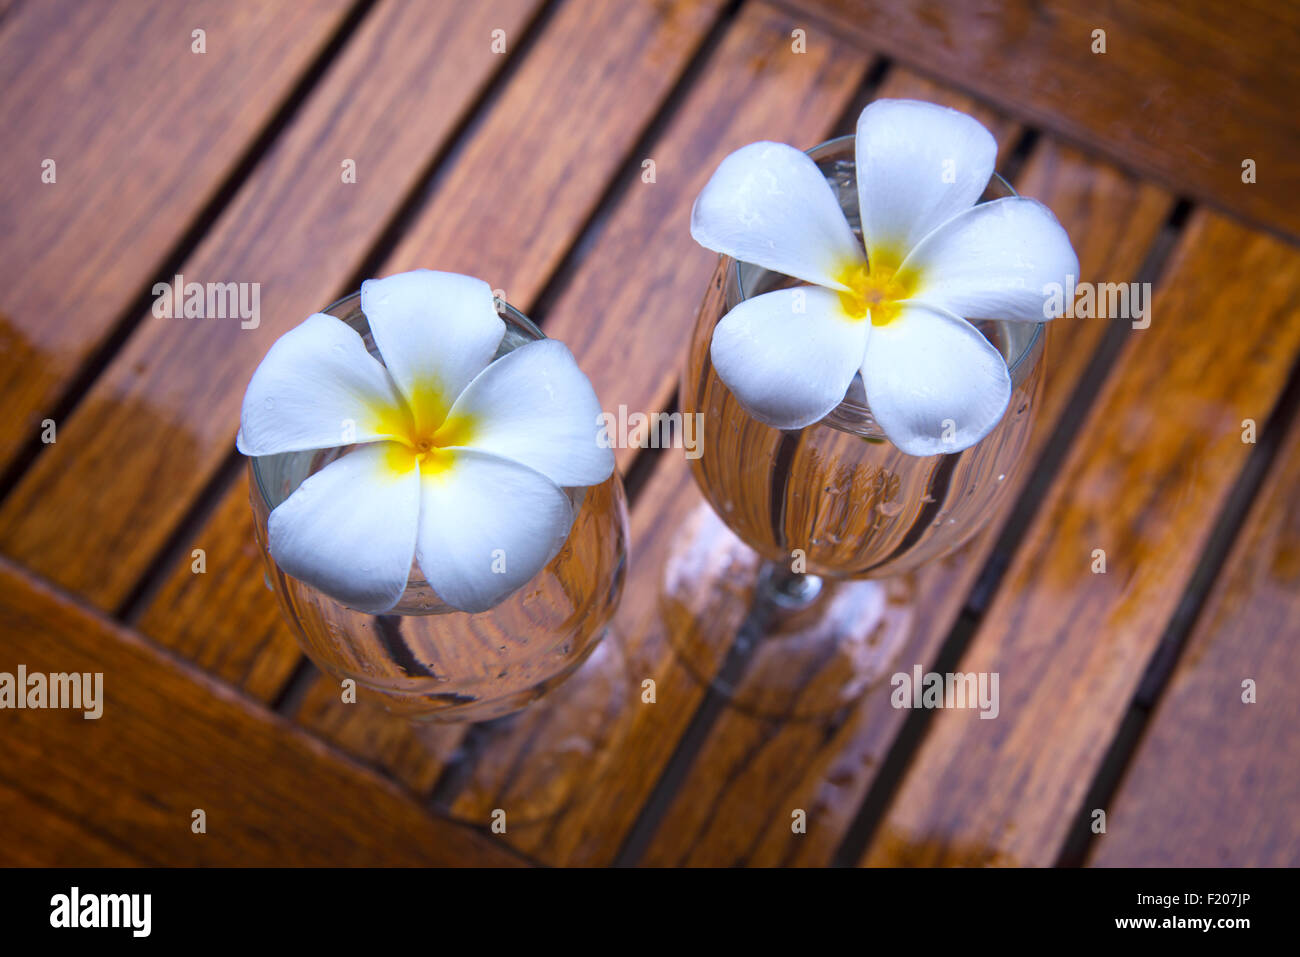 Romantic scene of frangipani in wine glass Stock Photo